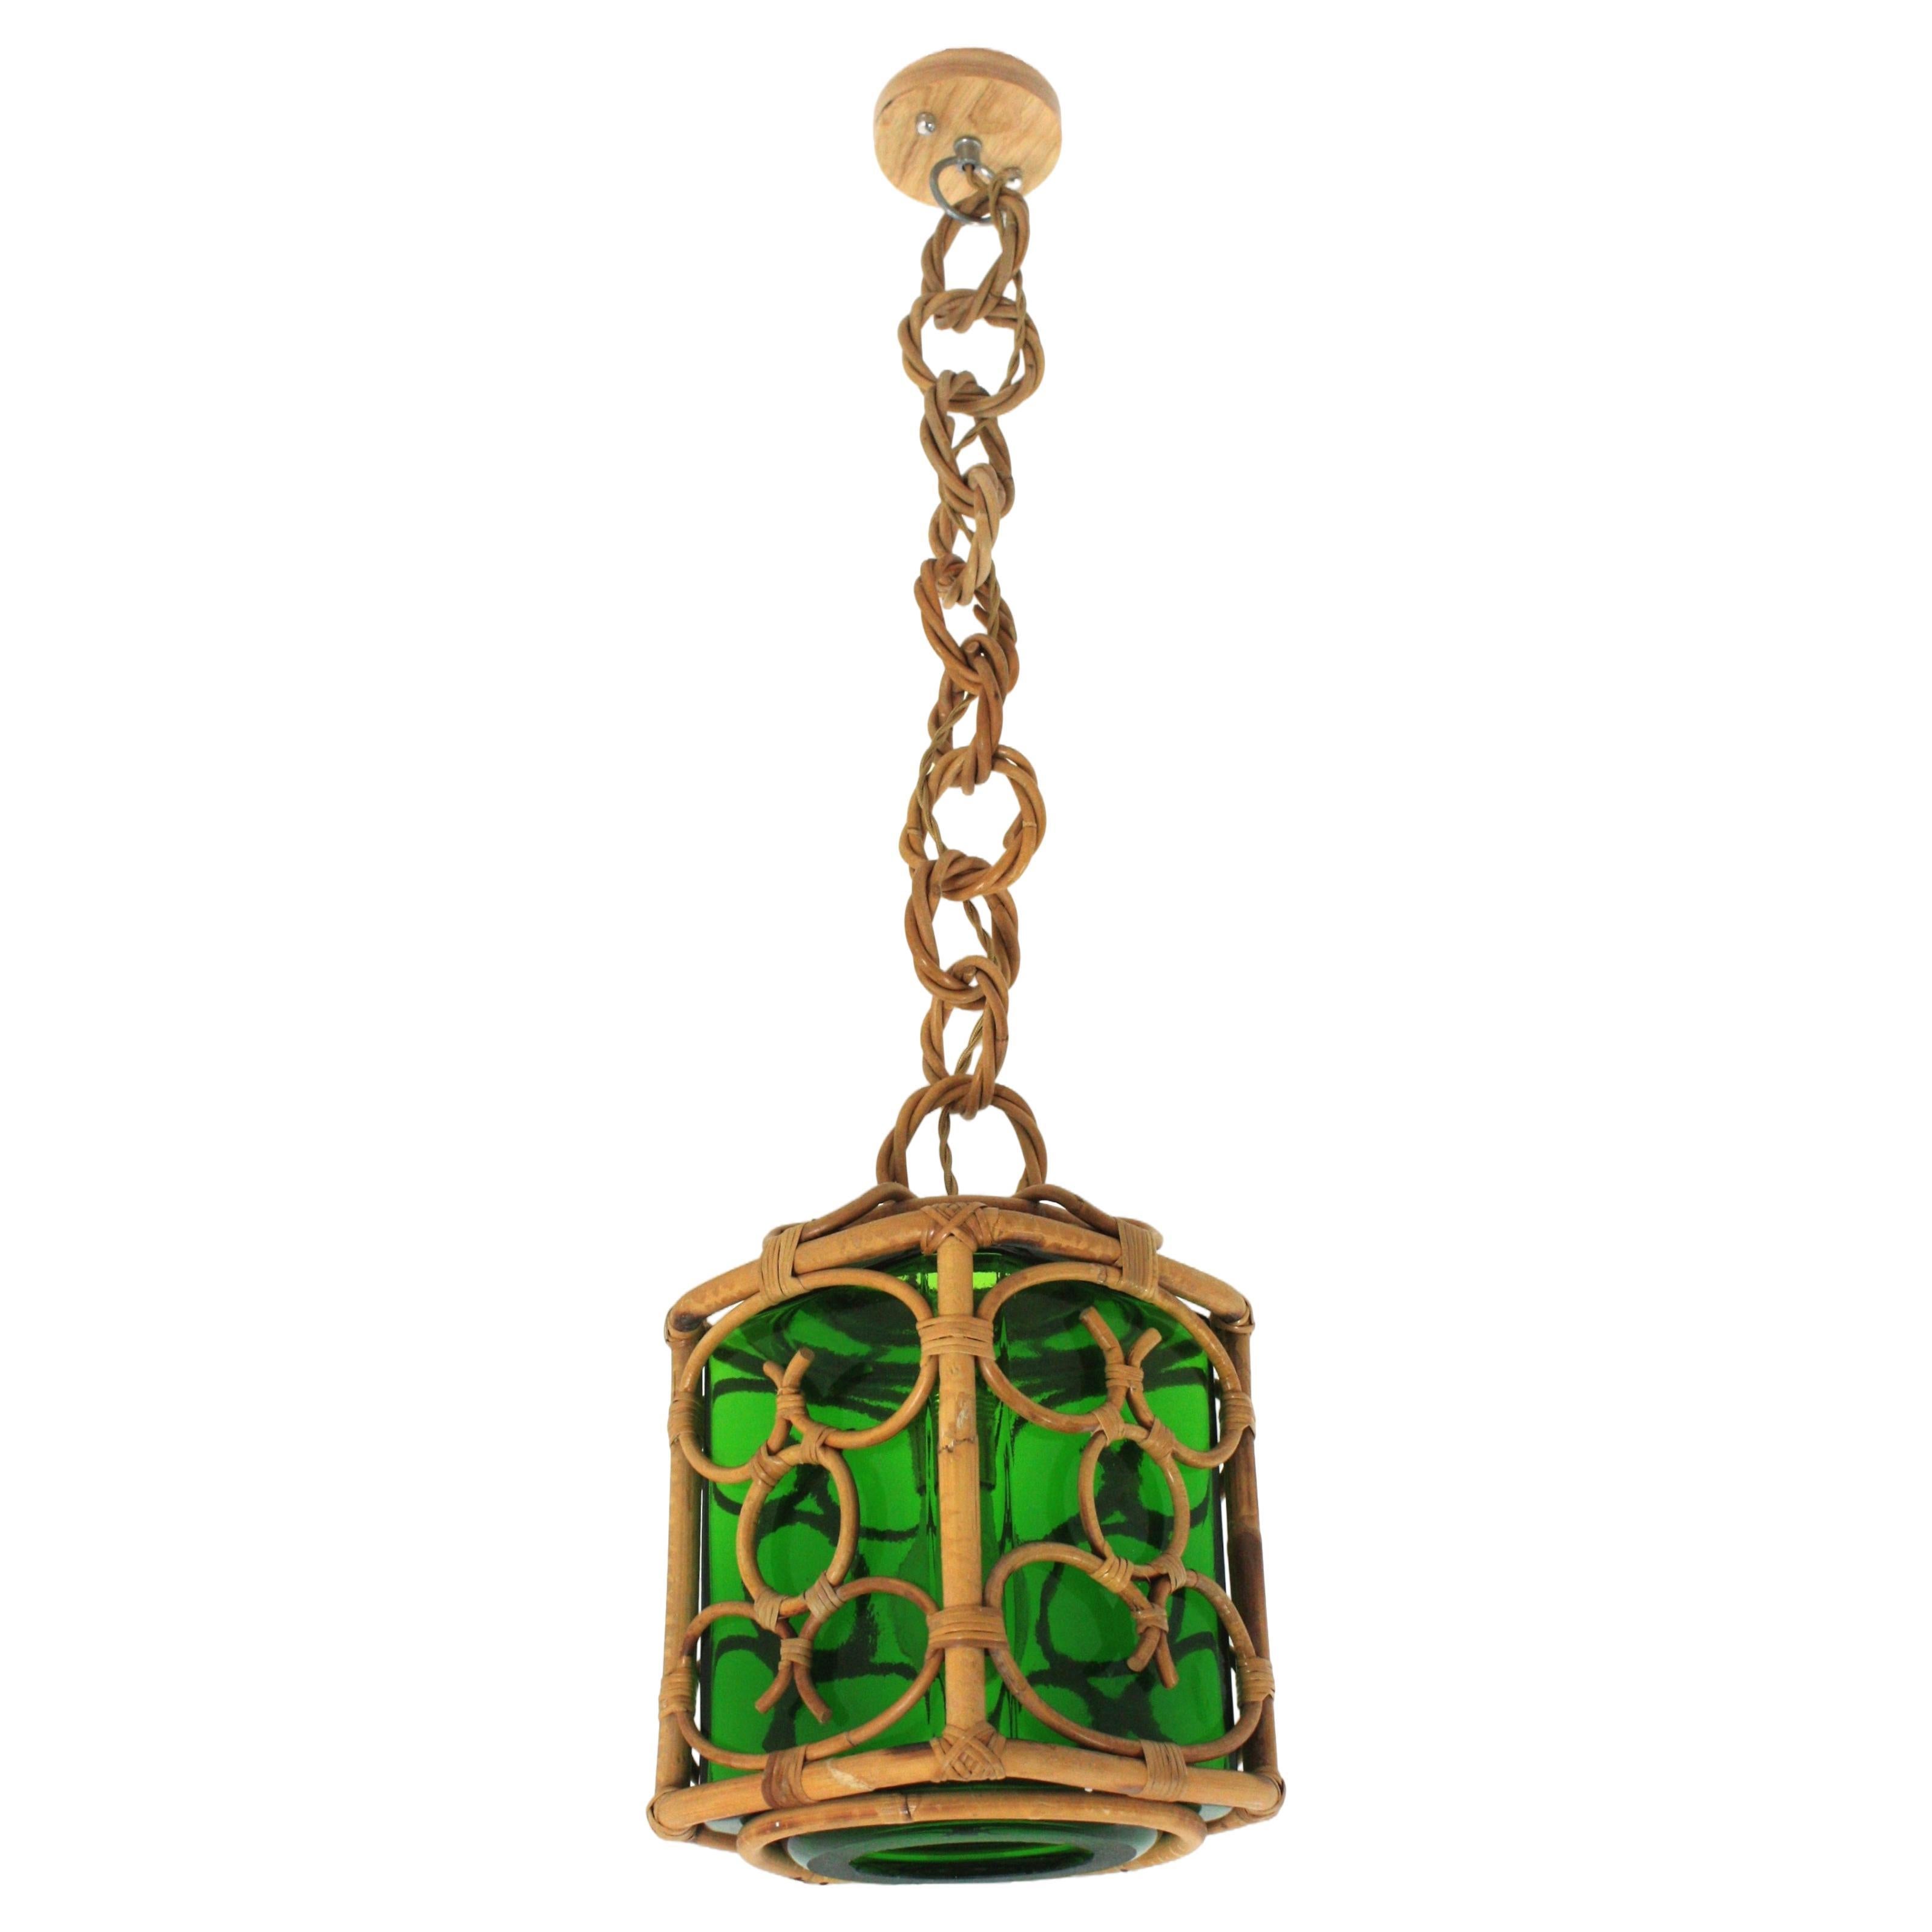 Quadratische Pendelleuchte mit Glasschirm, Rattan, Bambus, Frankreich, 1960er Jahre.
Mid-Century Modern Bambus und Rattan orientalisch inspirierte Laterne mit grünem mundgeblasenem Glas Lampenschirm.
Diese handgefertigte Deckenleuchte hat eine